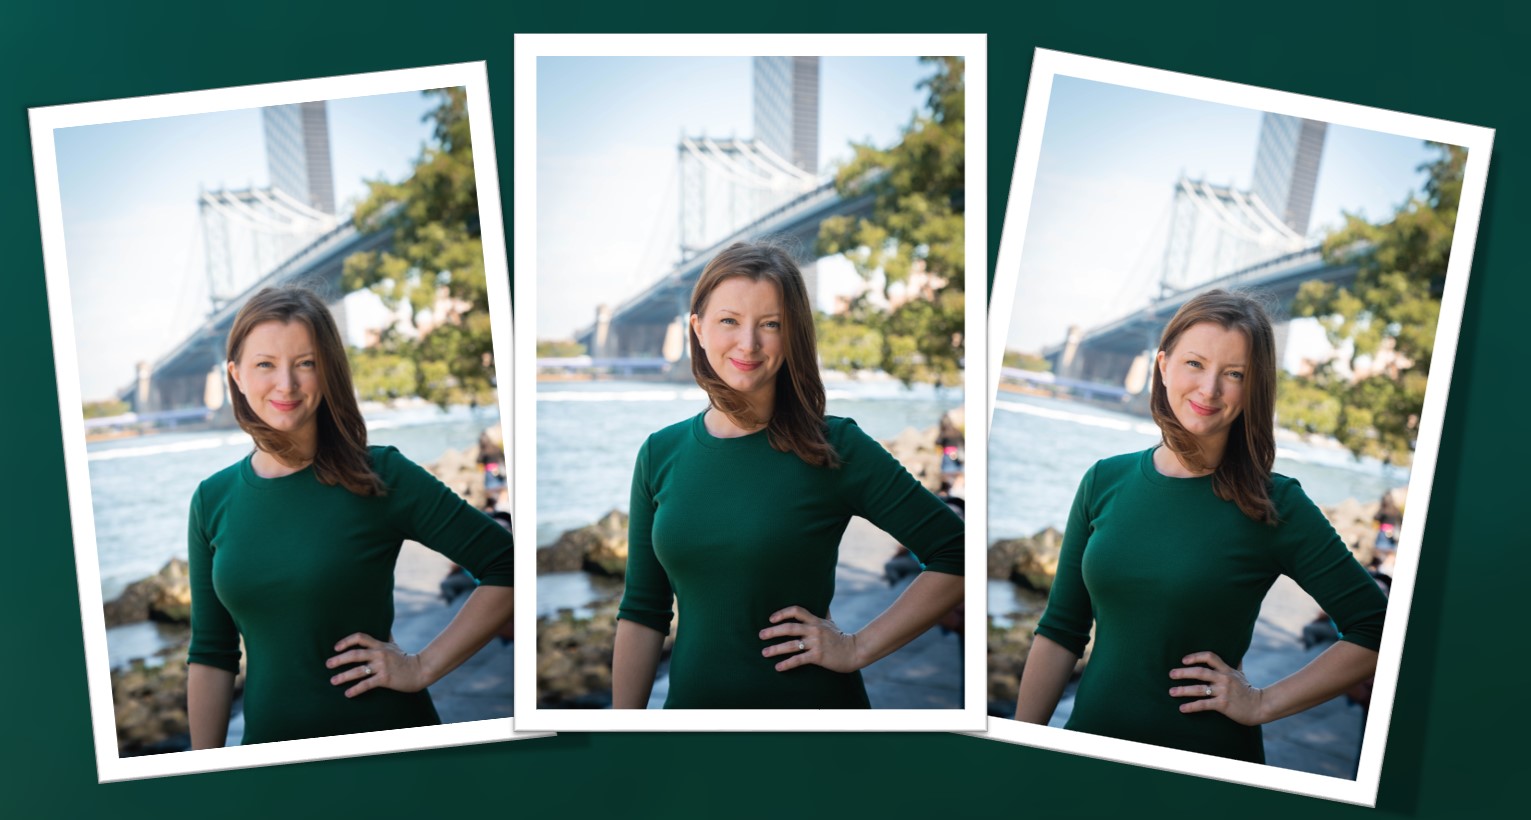 Christine McKenna-Tirella dressed in green with New York bridge in background